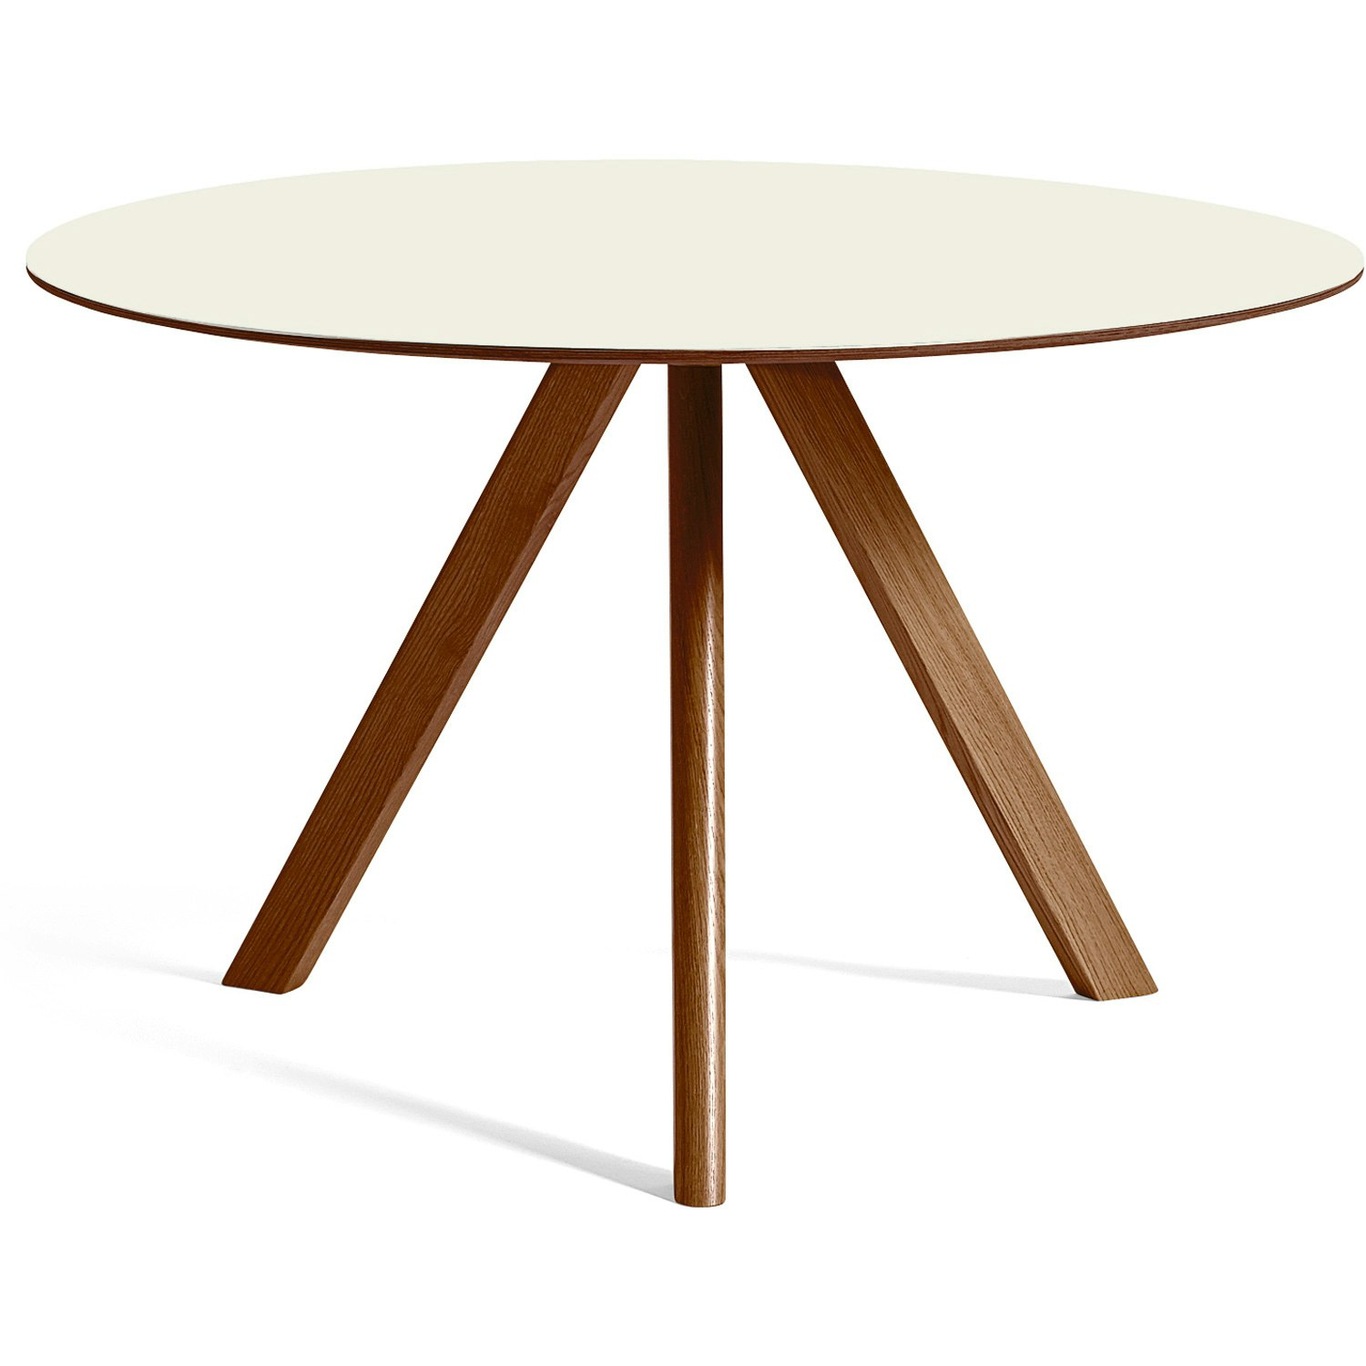 CPH 20 Tisch Ø120x74 cm, Mit Lack auf Wasserbasis lackiert Walnussholz / Altweiß Linoleum